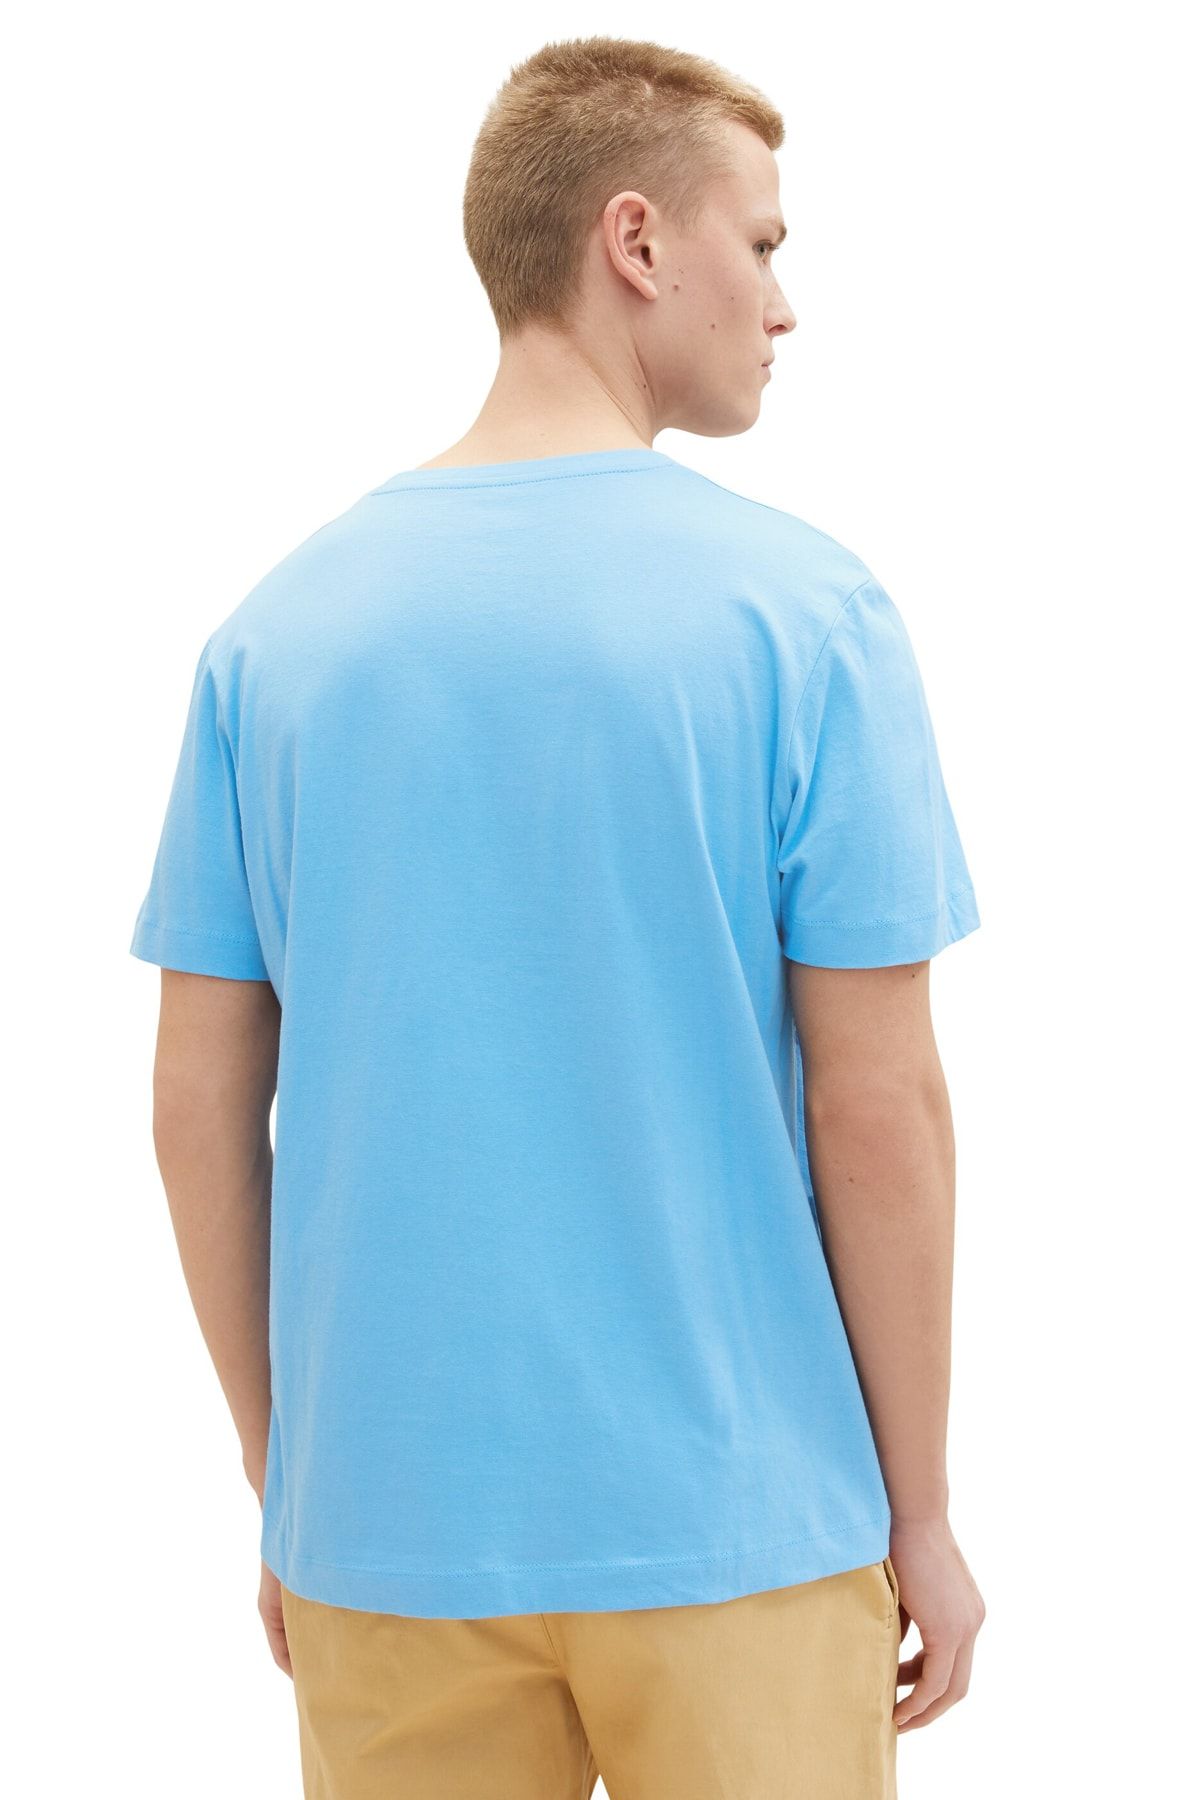 Tom Tailor Denim Men's rainy sky blue T-Shirt - Trendyol